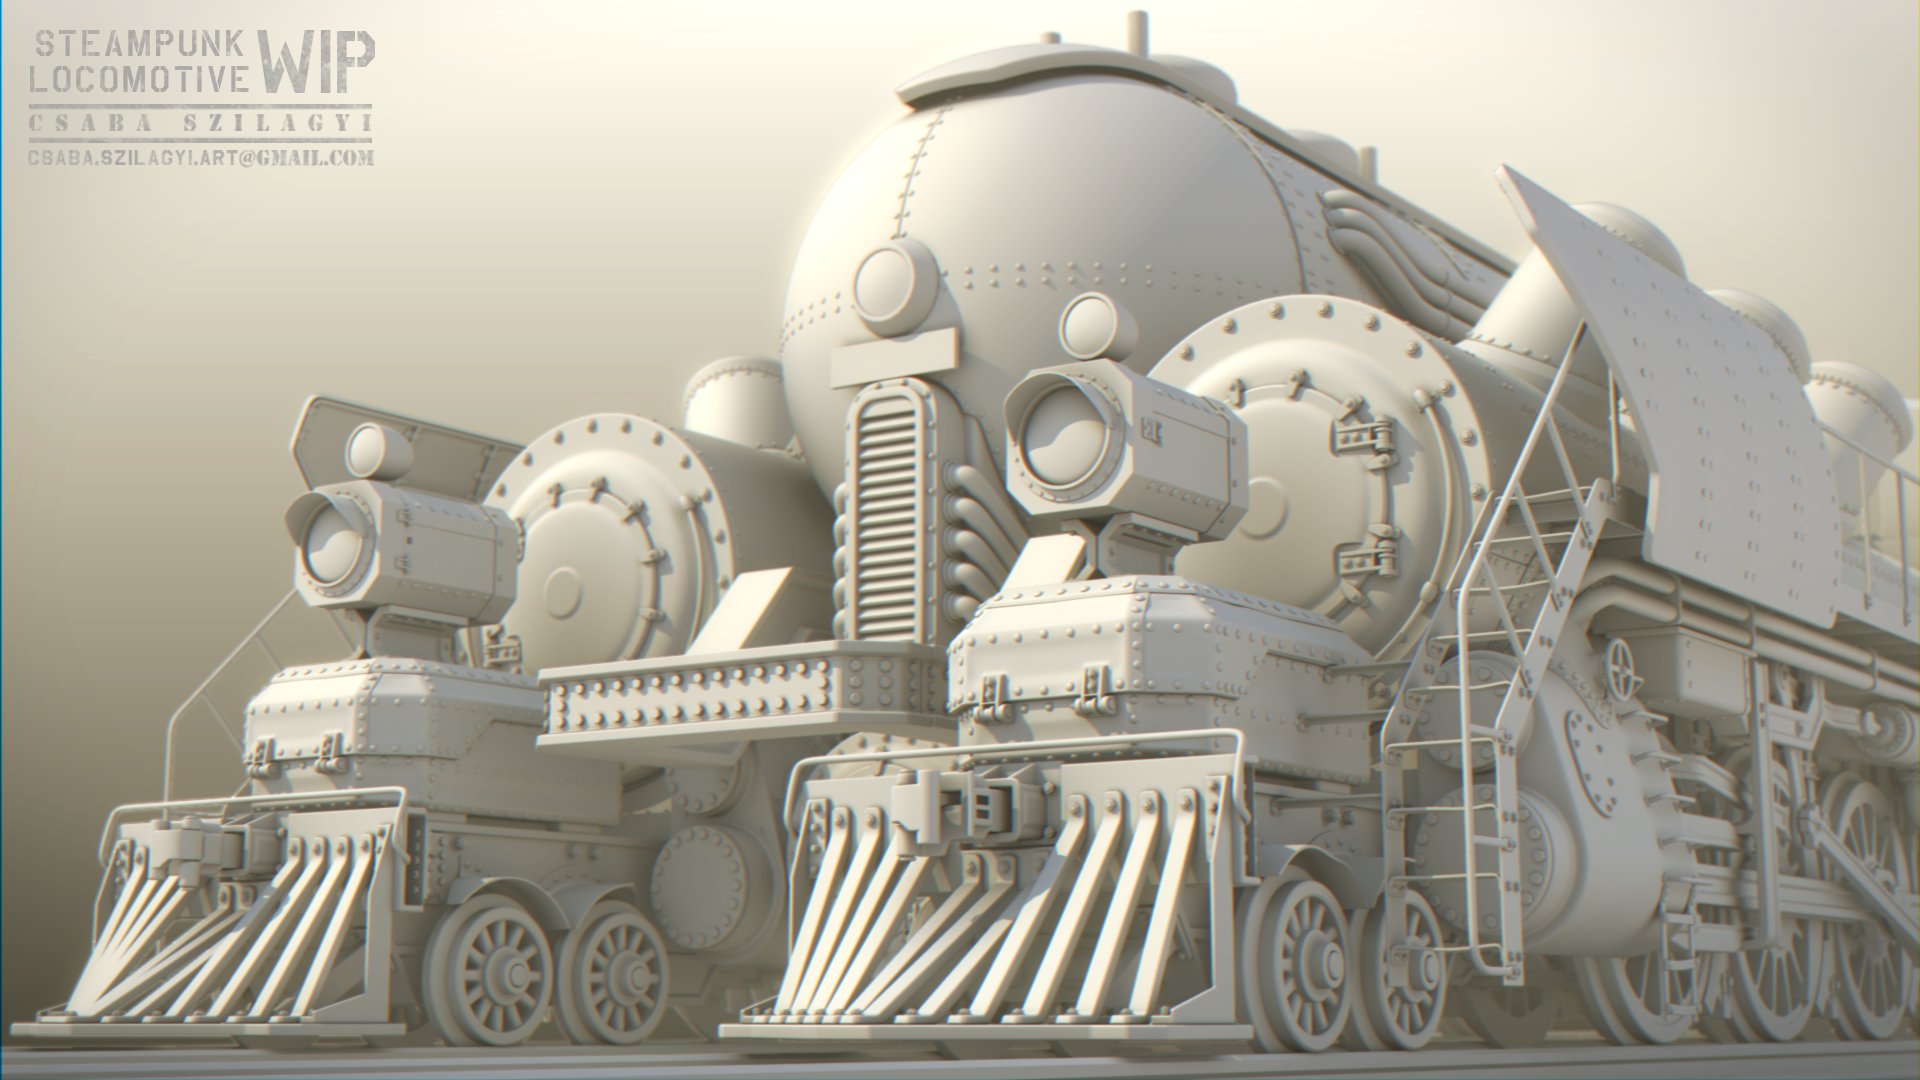 csaba-szilagyi-steampunk-locomotive-wip-12.jpg